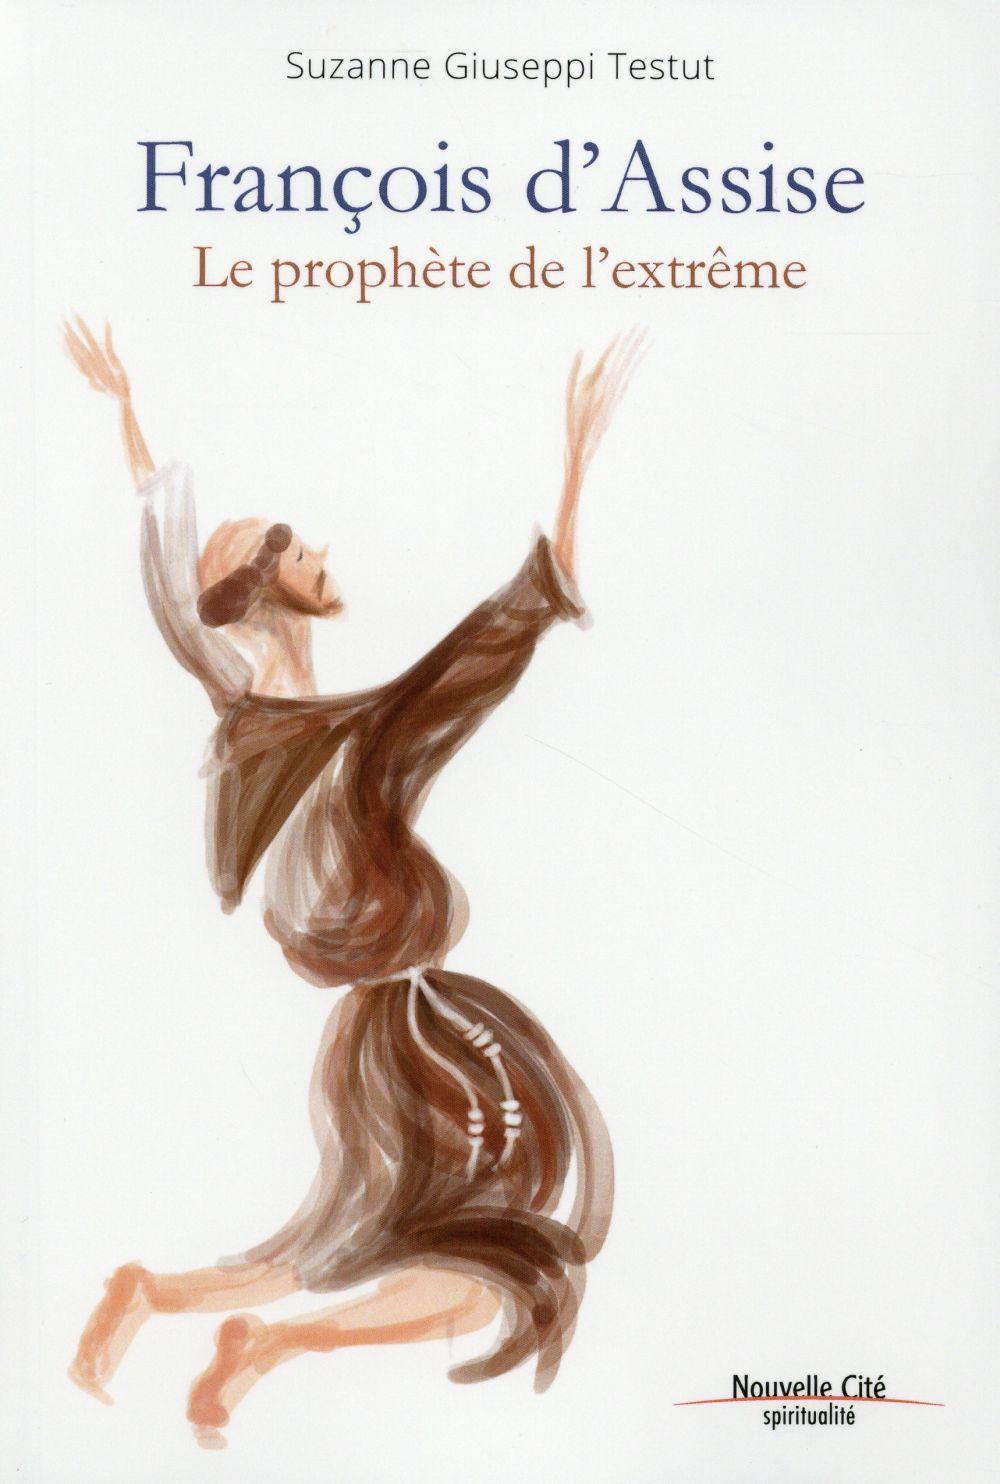 Vente Livre :                                    Francois d'Assise ; le prophète de l'extrême
- Suzanne Giuseppi-Testut                                     